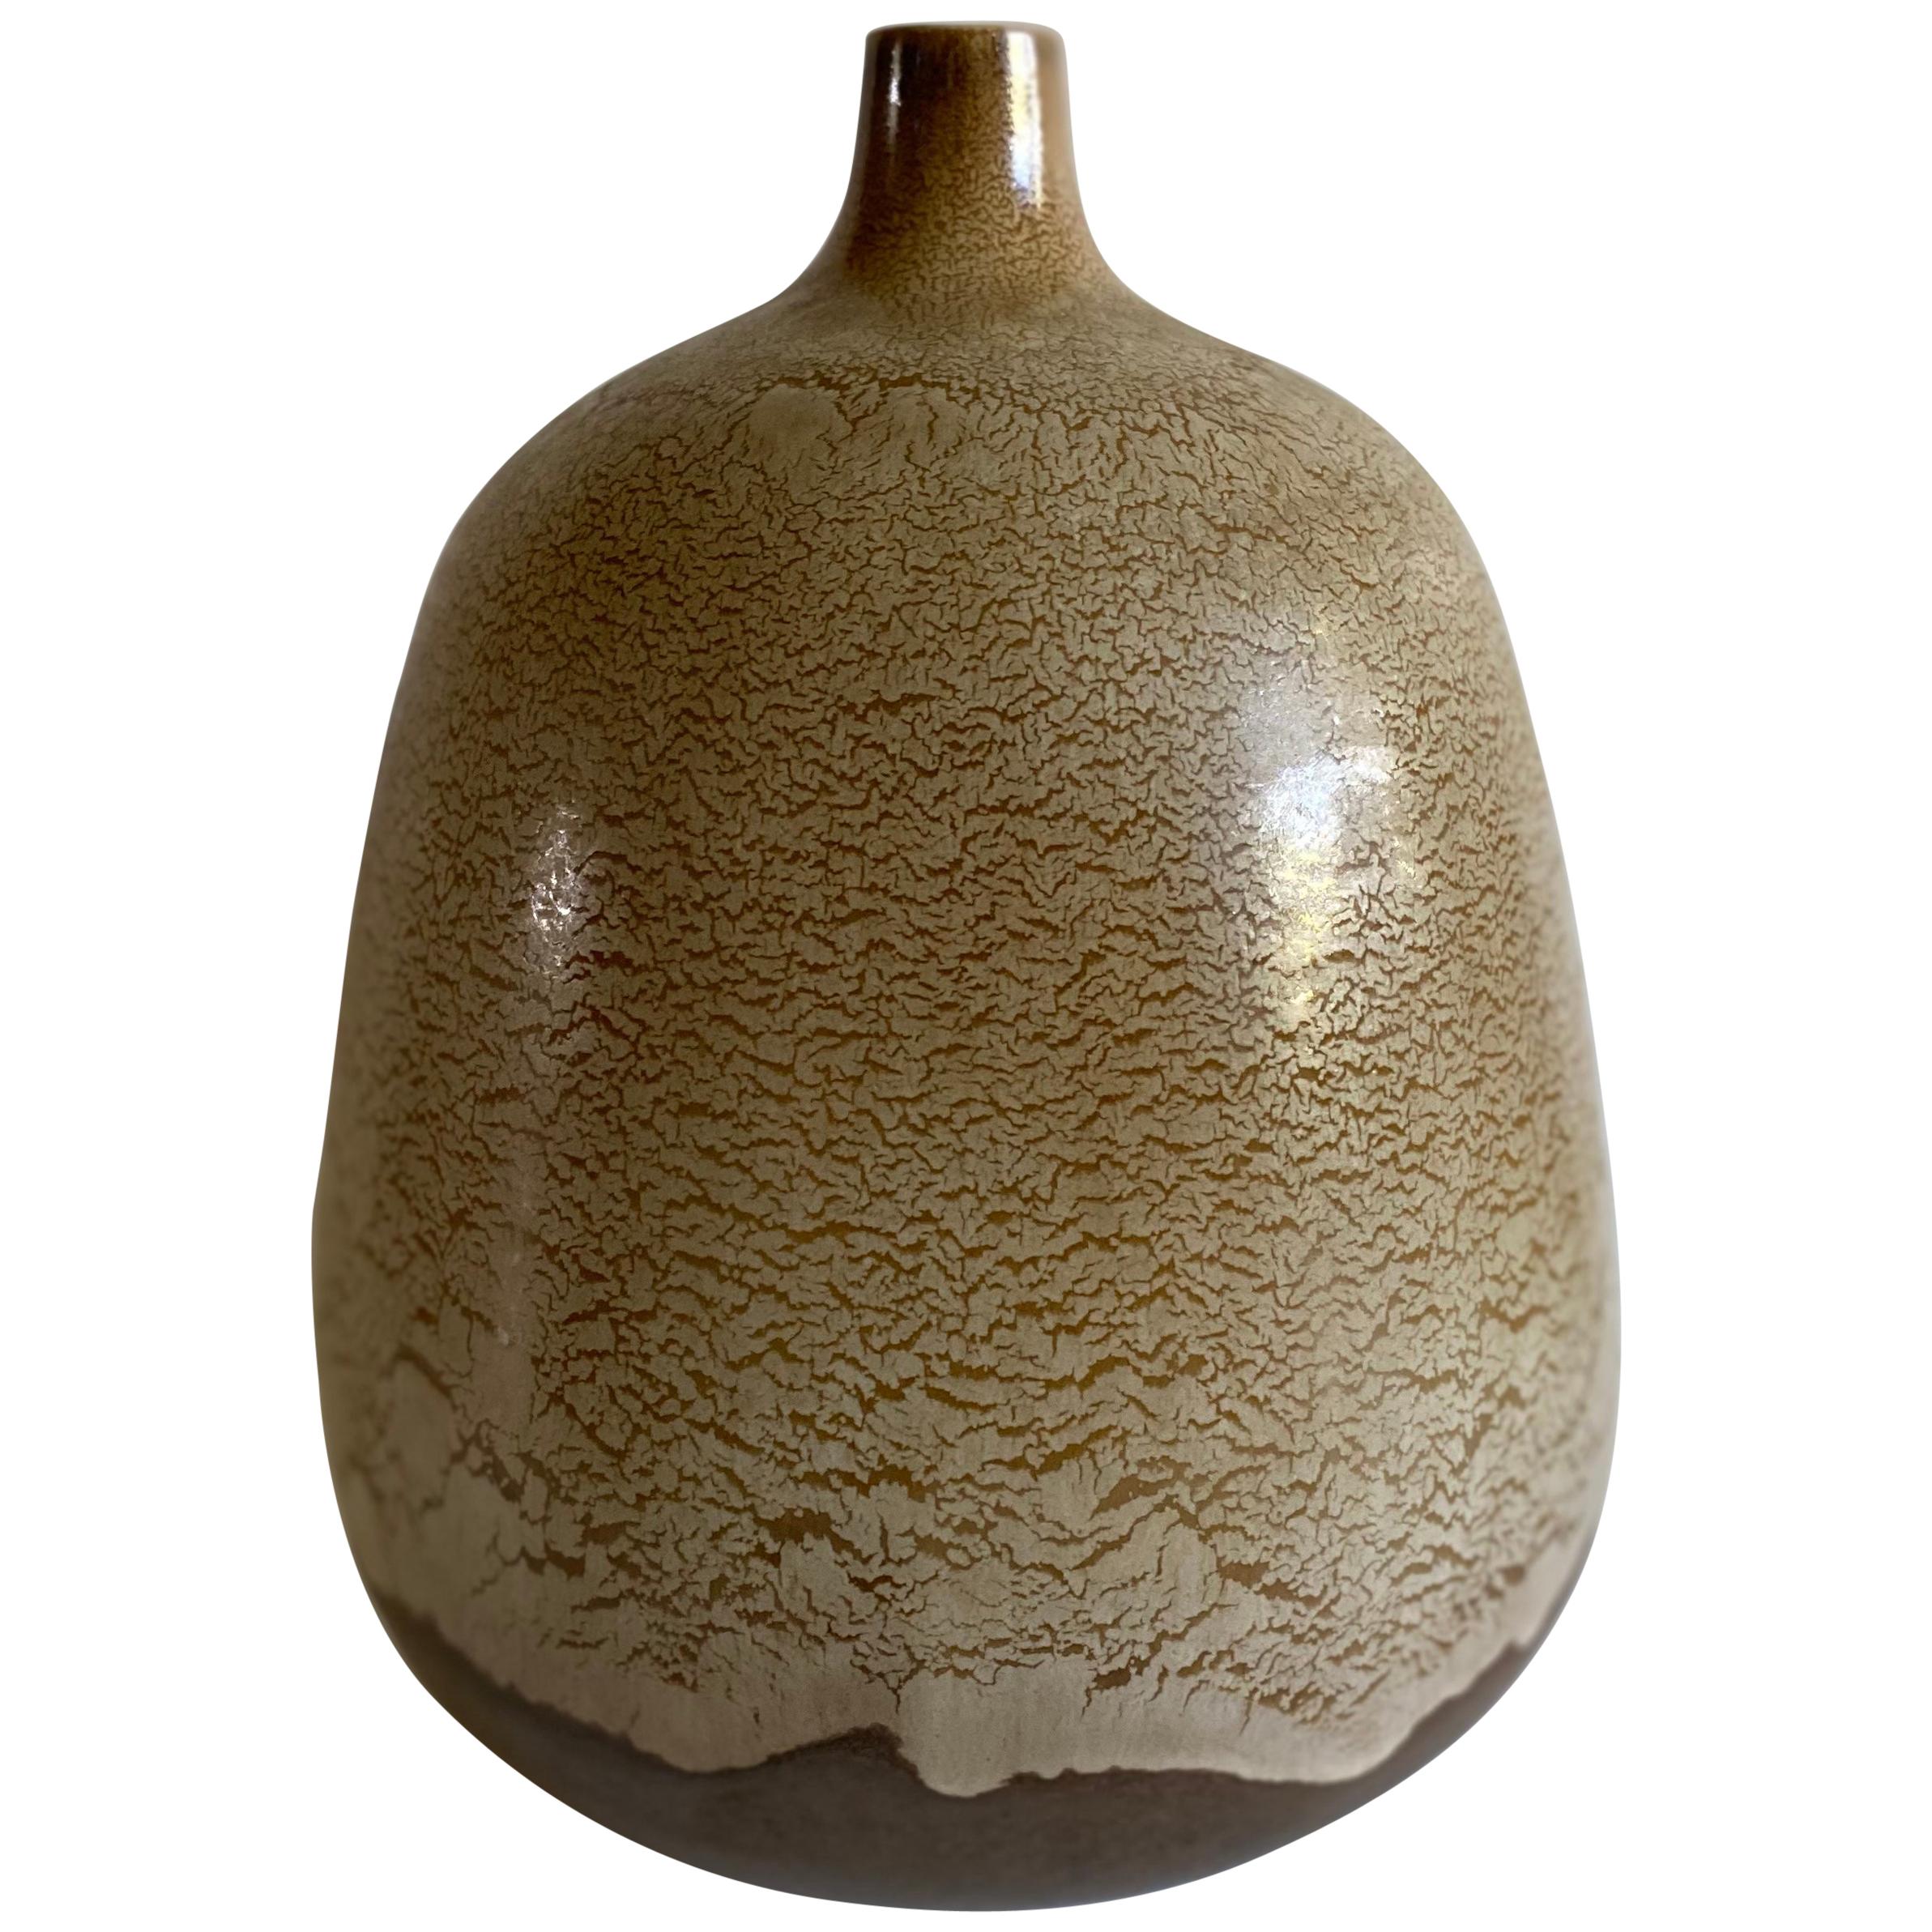 Alvino Bagni for Raymor Earthone Modernist Ceramic Vase